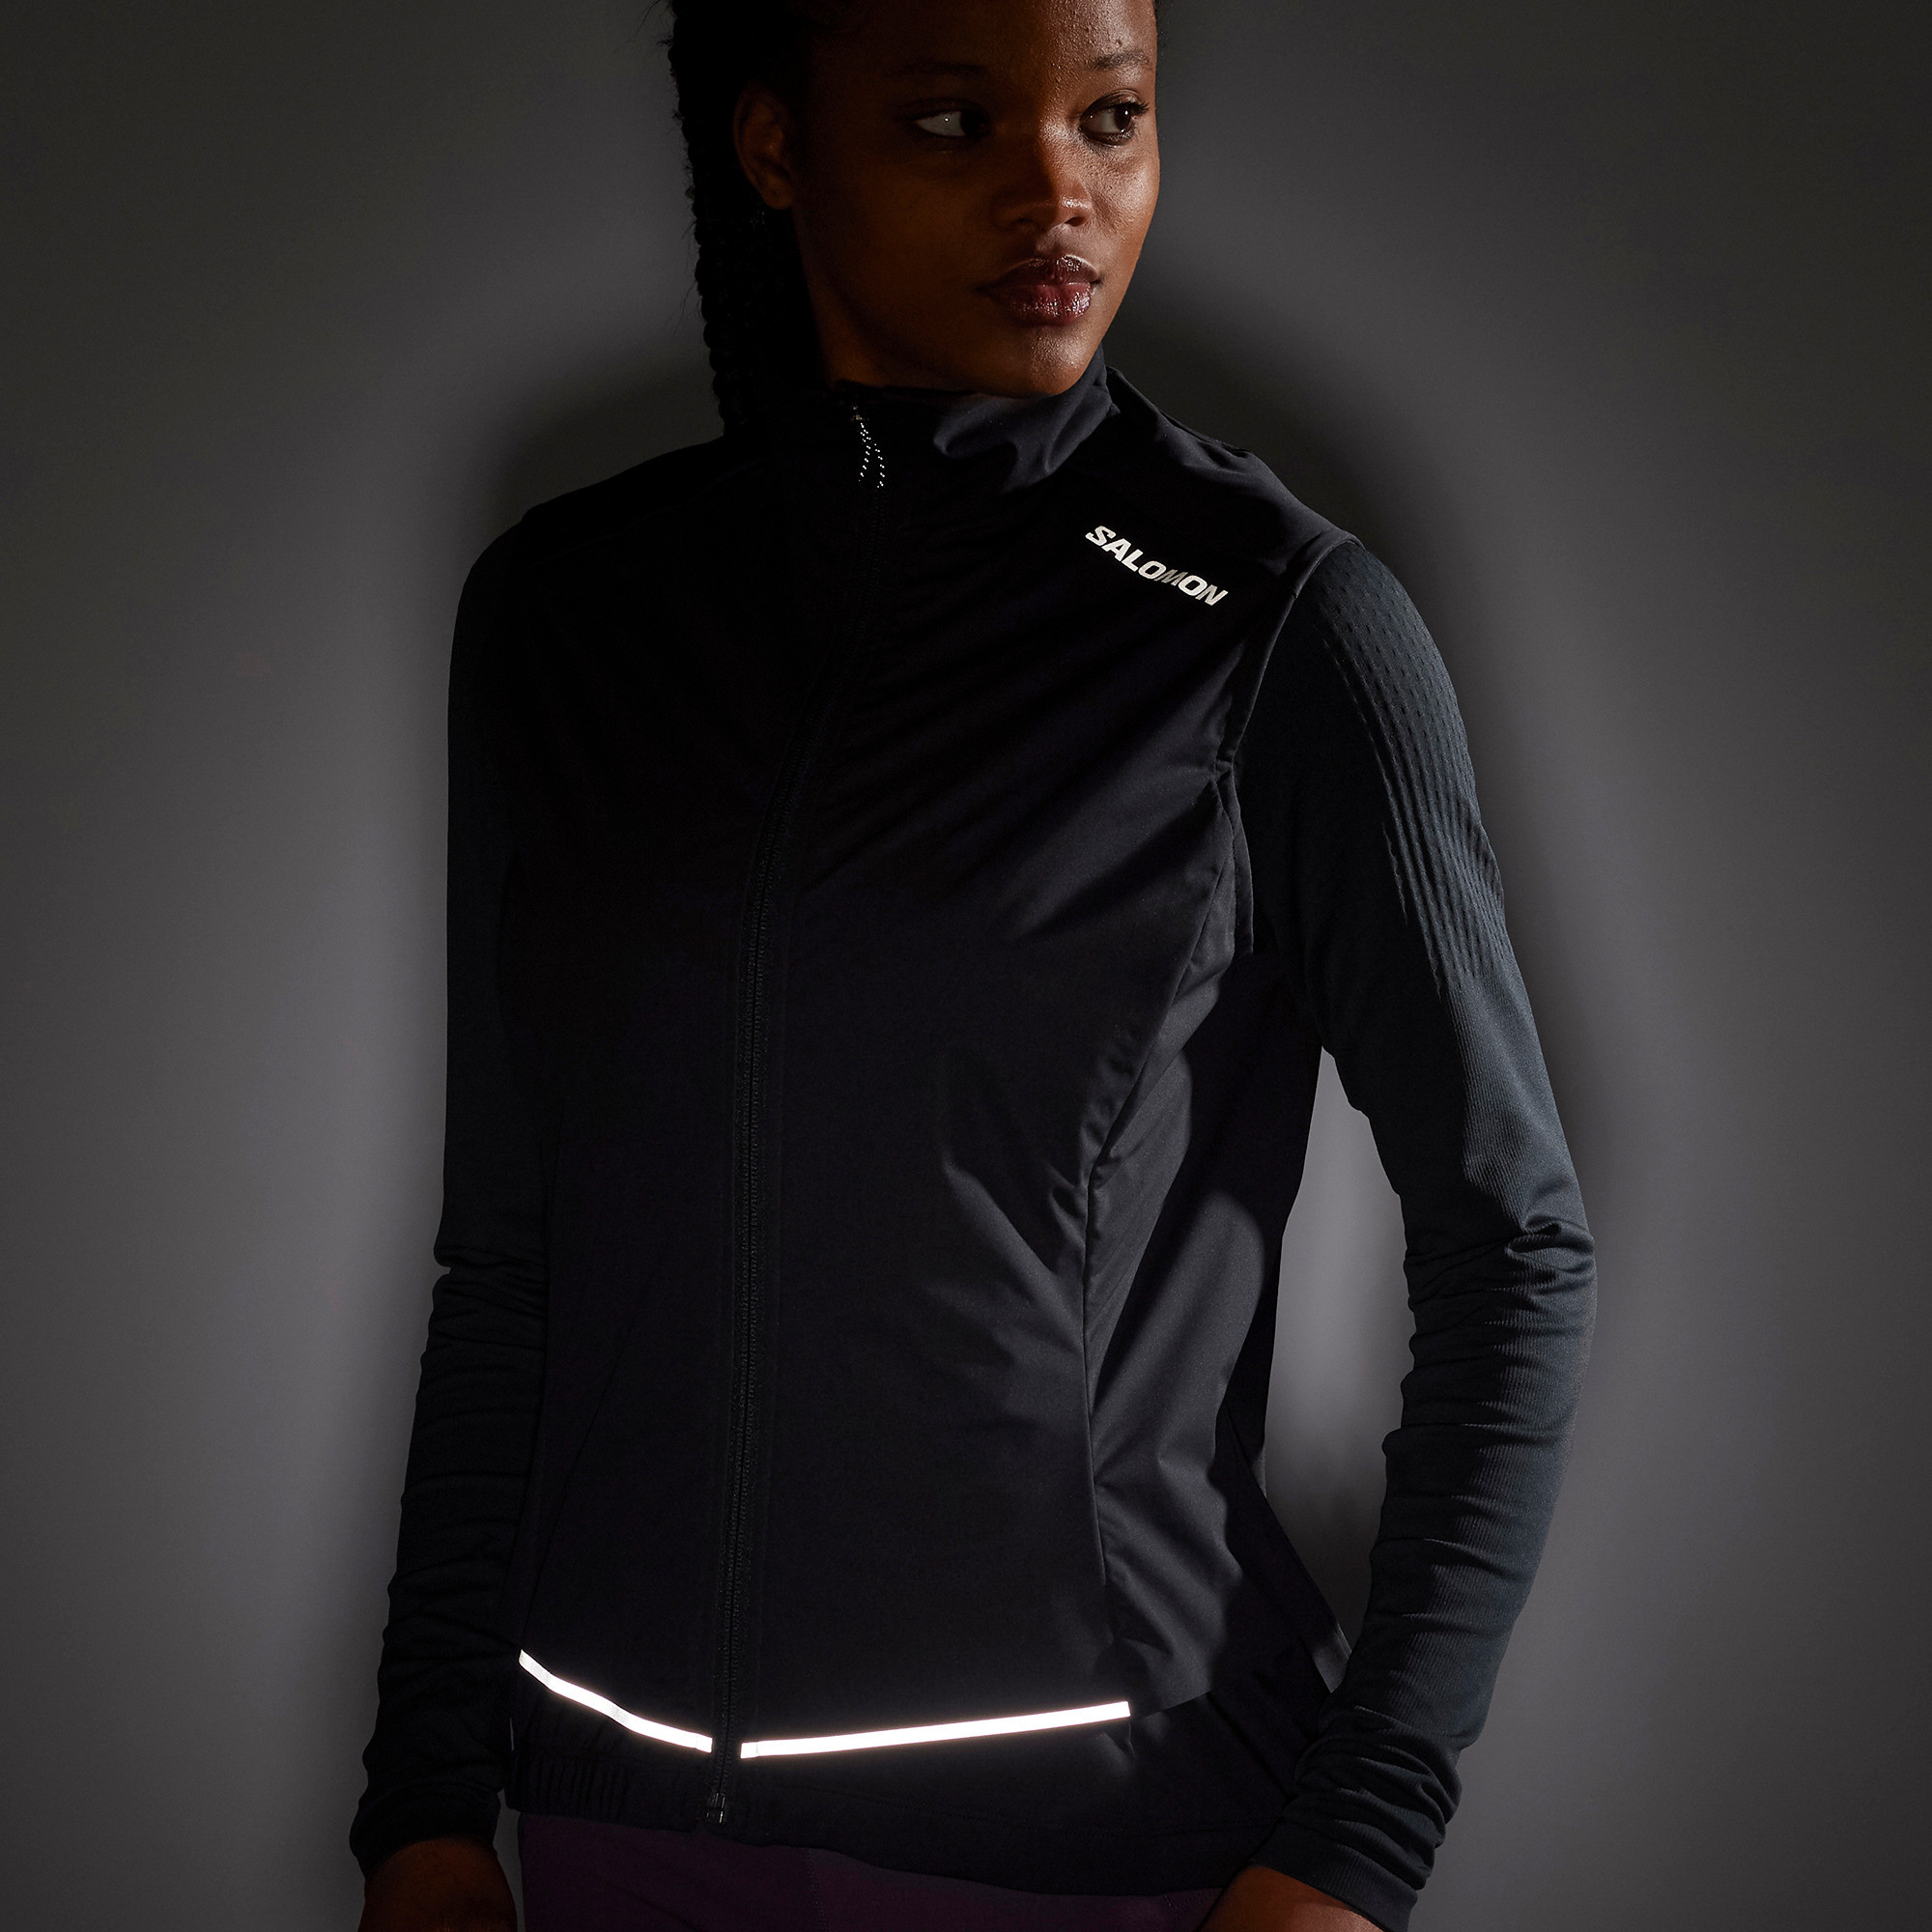 Salomon Light Shell Vest - Gilet de running Femme